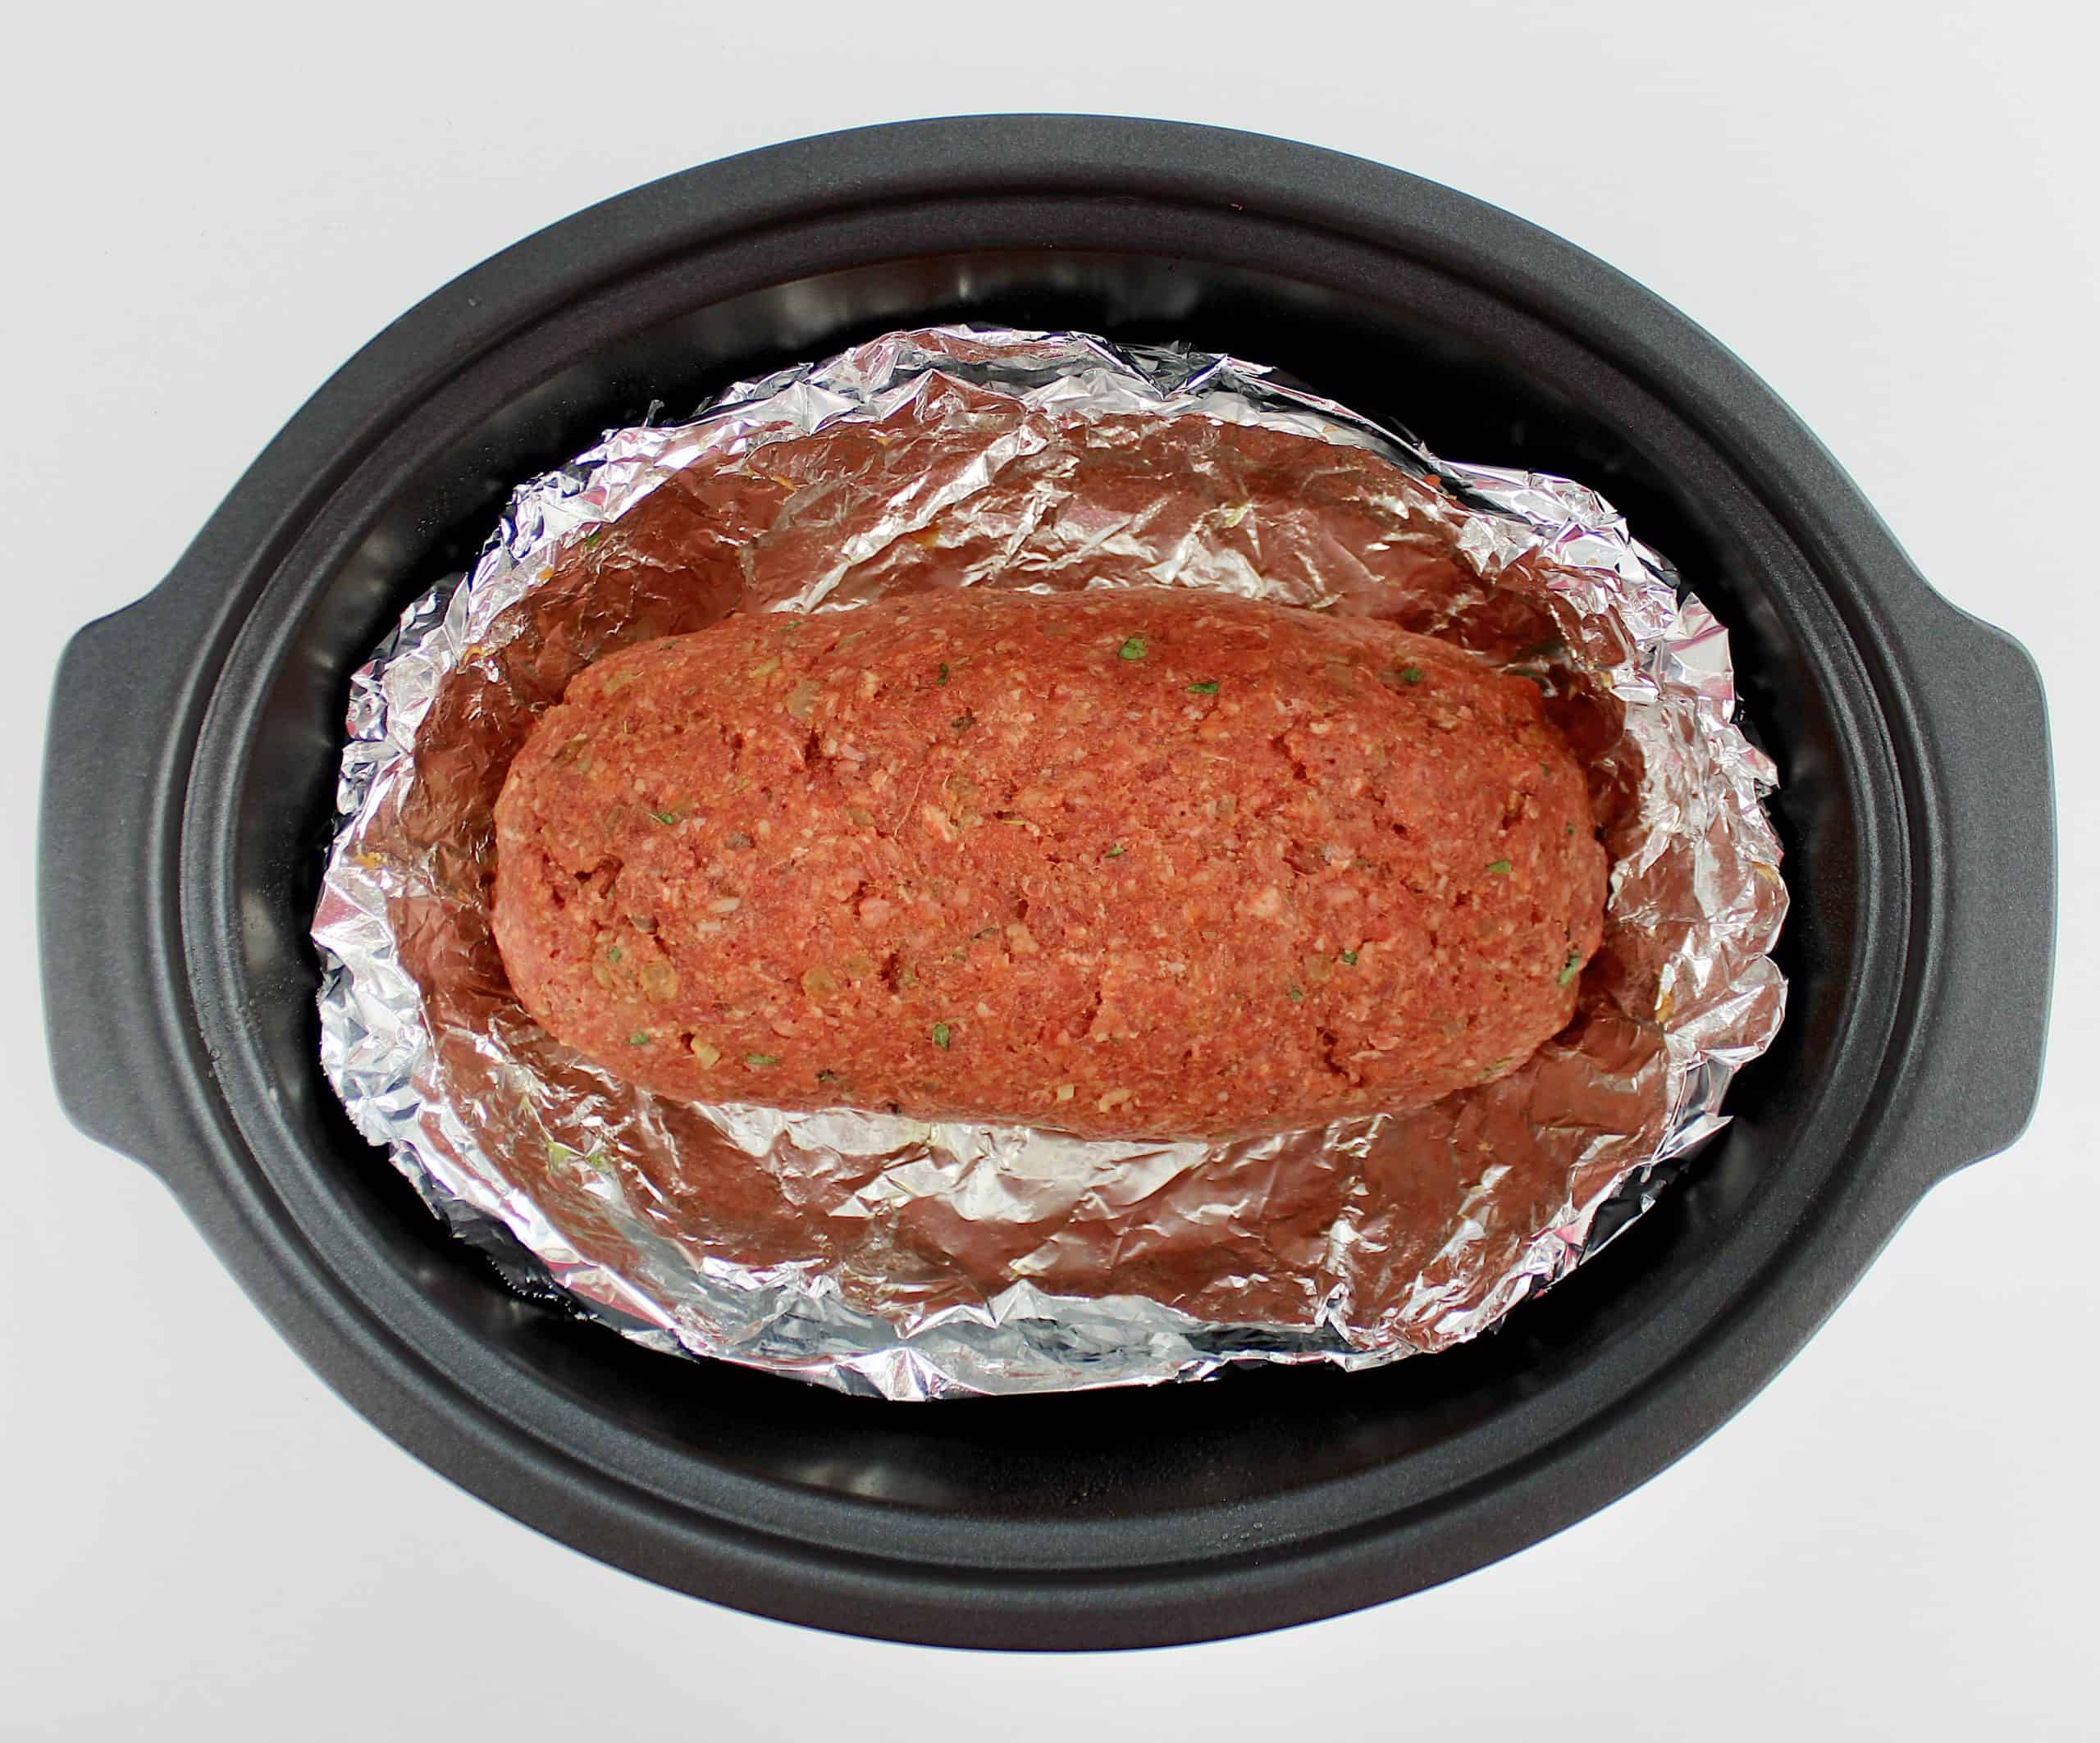 Keto Crockpot Meatloaf uncooked in foil lined slow cooker